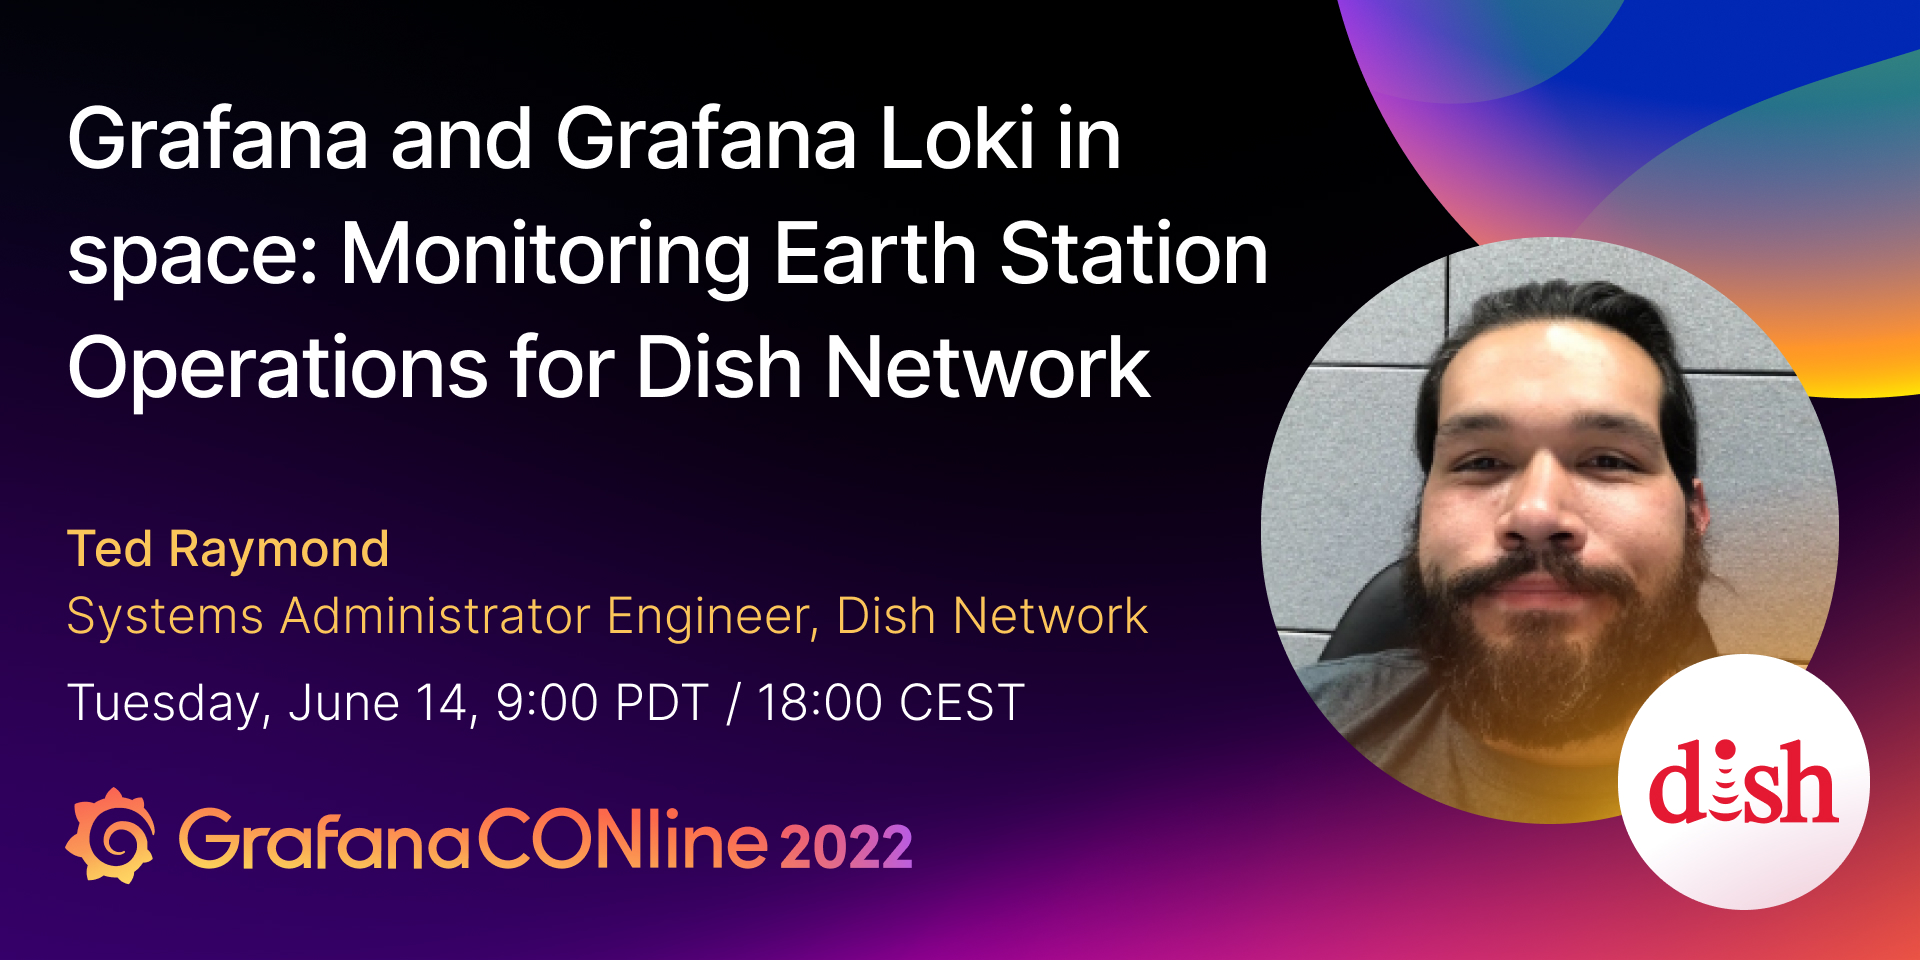 太空中的Grafana和Grafana Loki:监视碟形网络的地面站操作